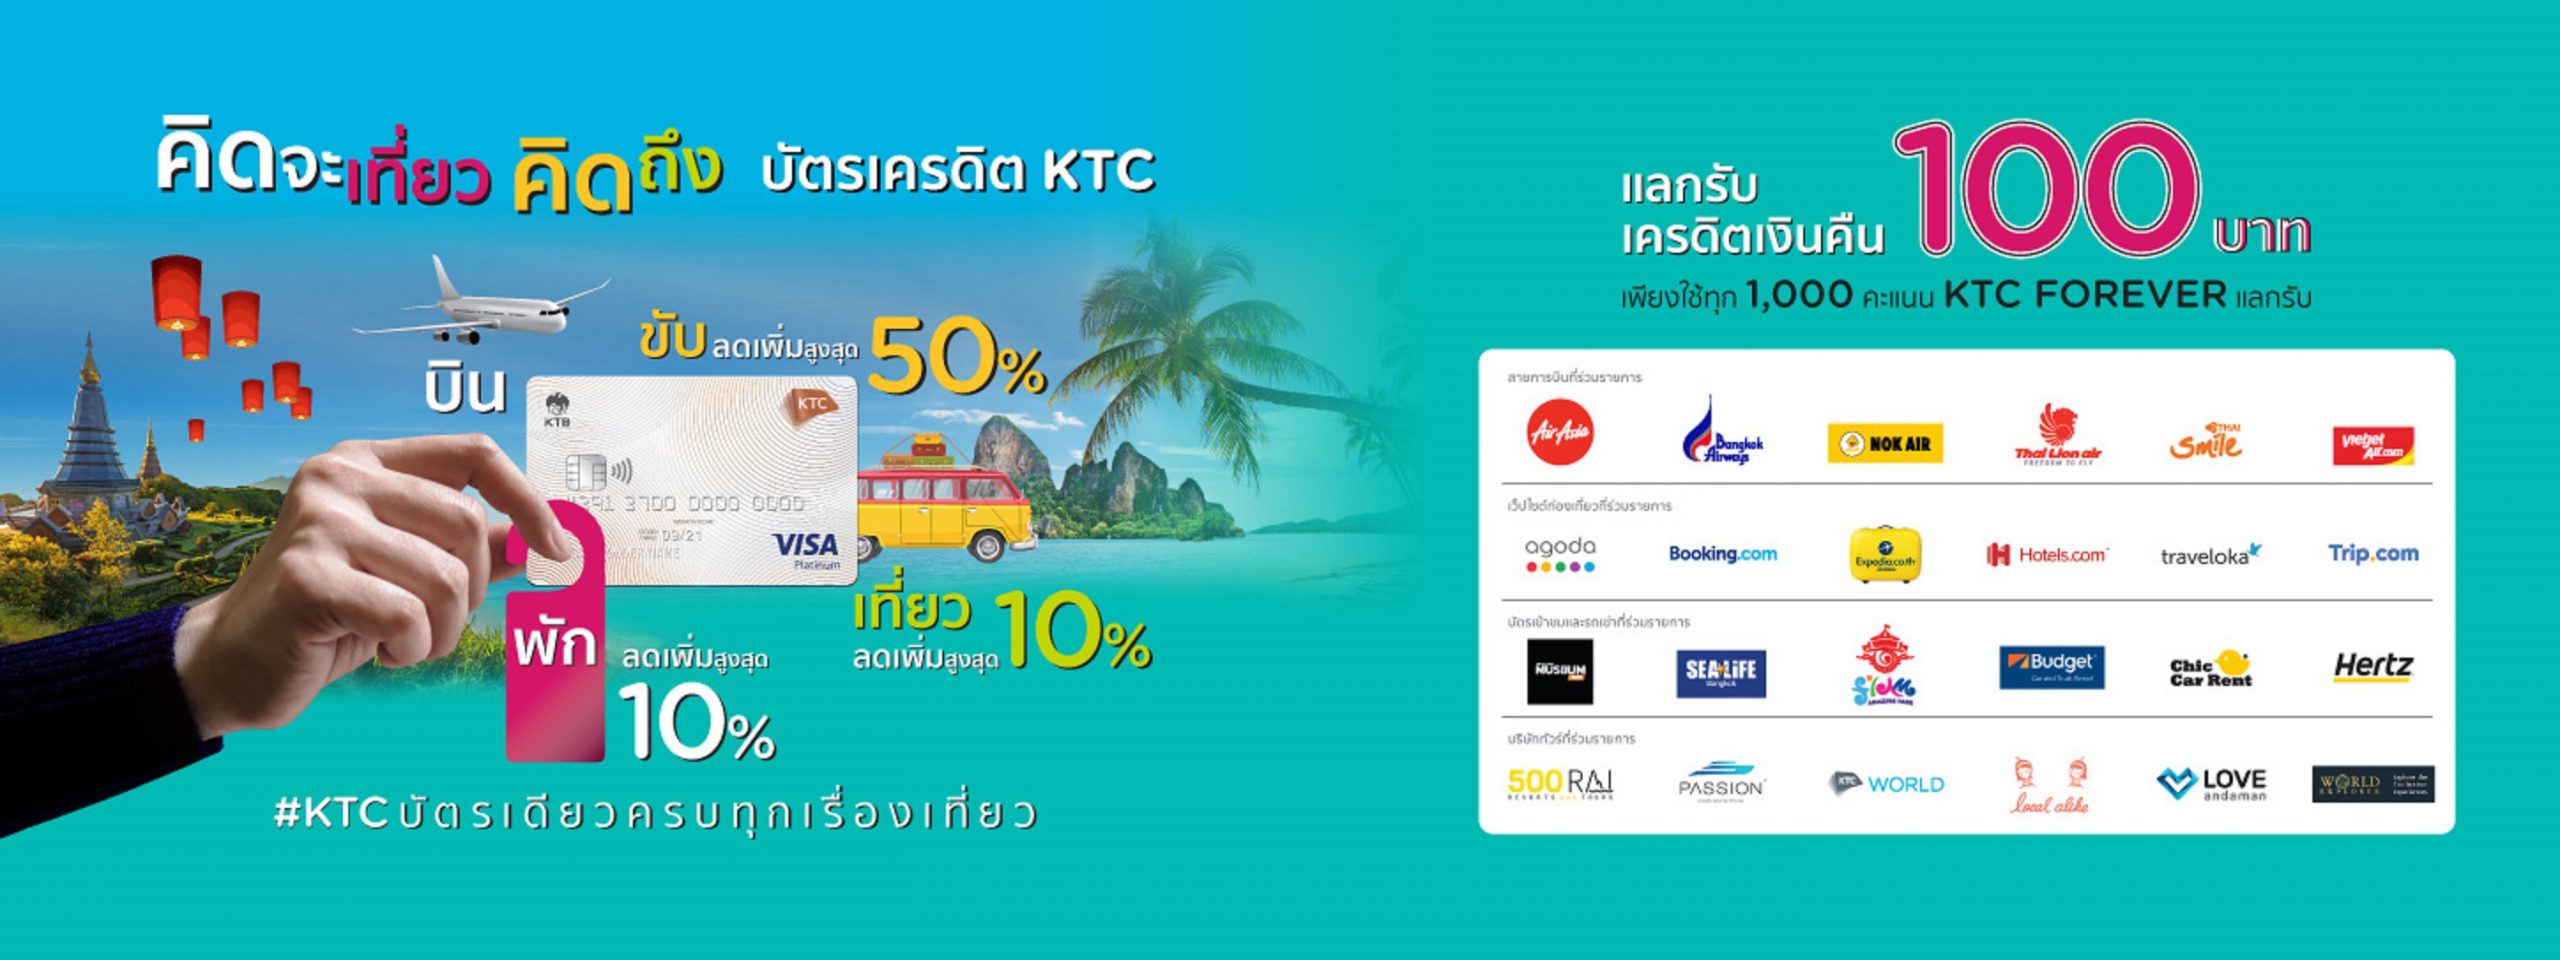 เคทีซีจับมือ 40 ธุรกิจท่องเที่ยว เปิดแคมเปญเที่ยวไทย เคทีซีบัตรเดียวครบทุกเรื่องเที่ยว